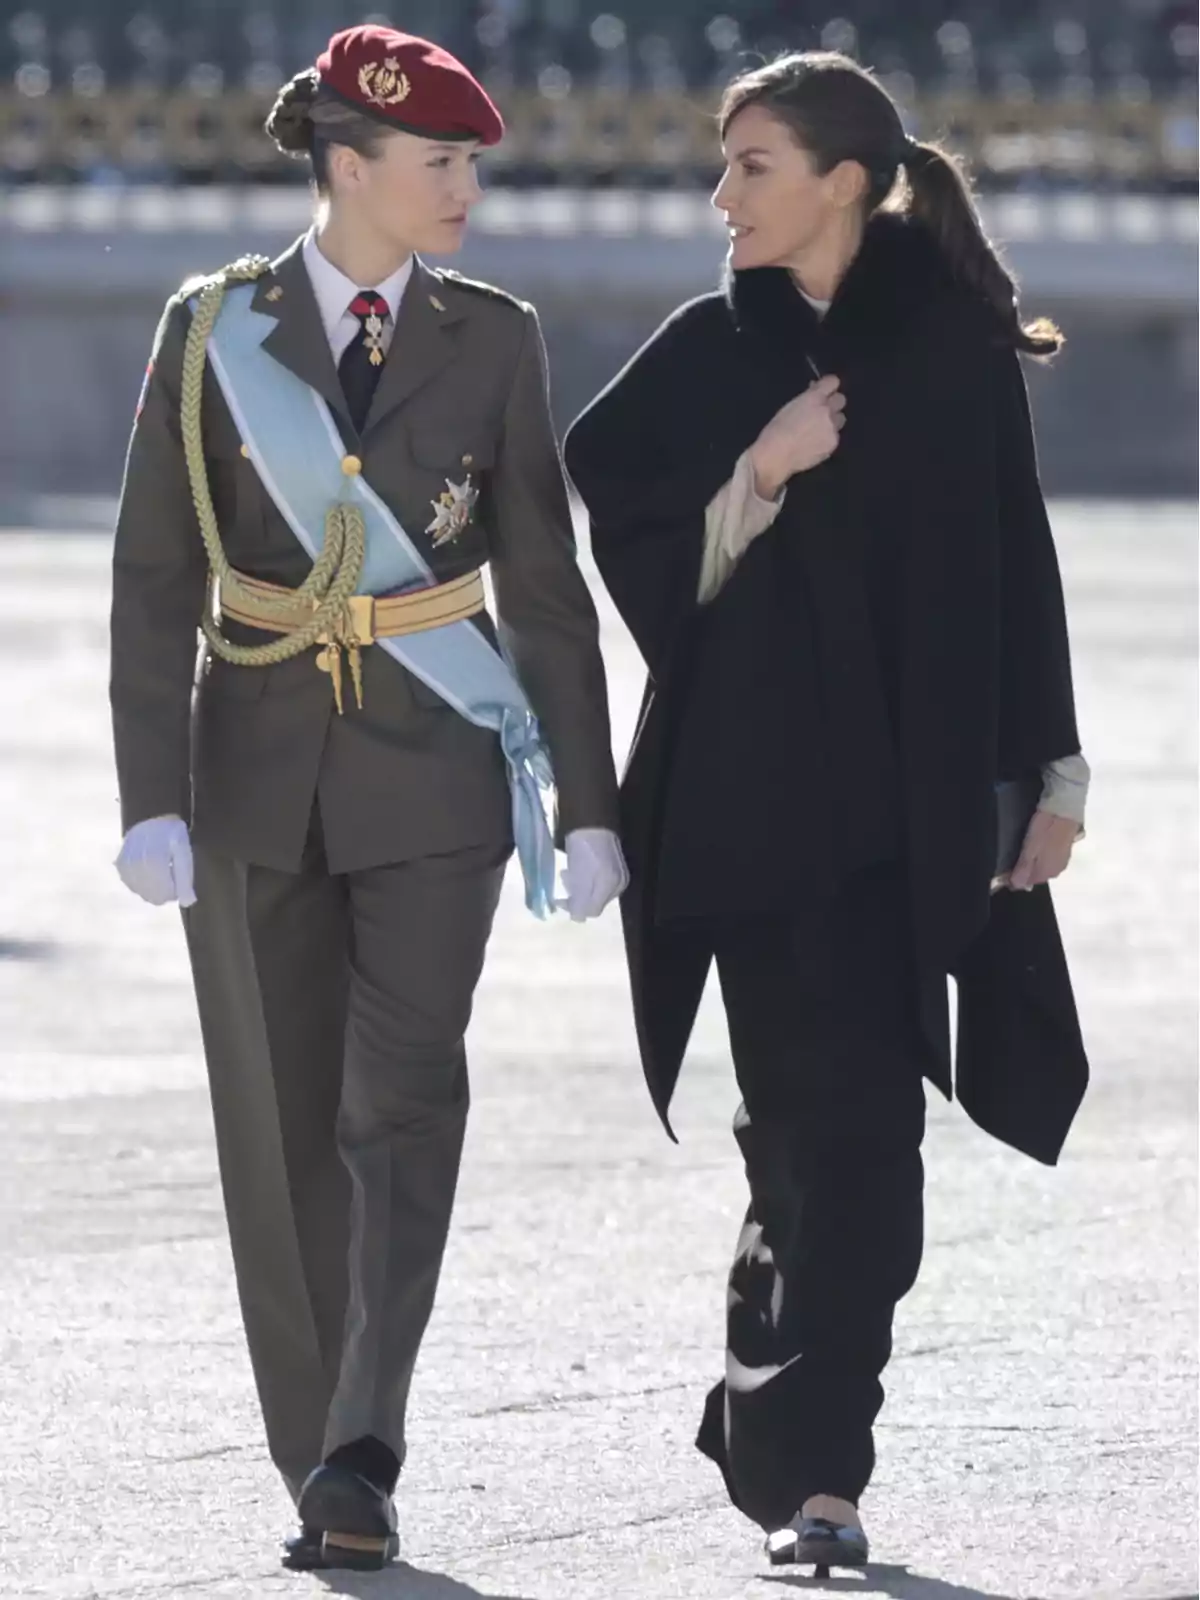 Dos mujeres caminando juntas, una de ellas vestida con uniforme militar y boina roja, mientras la otra lleva un abrigo negro.